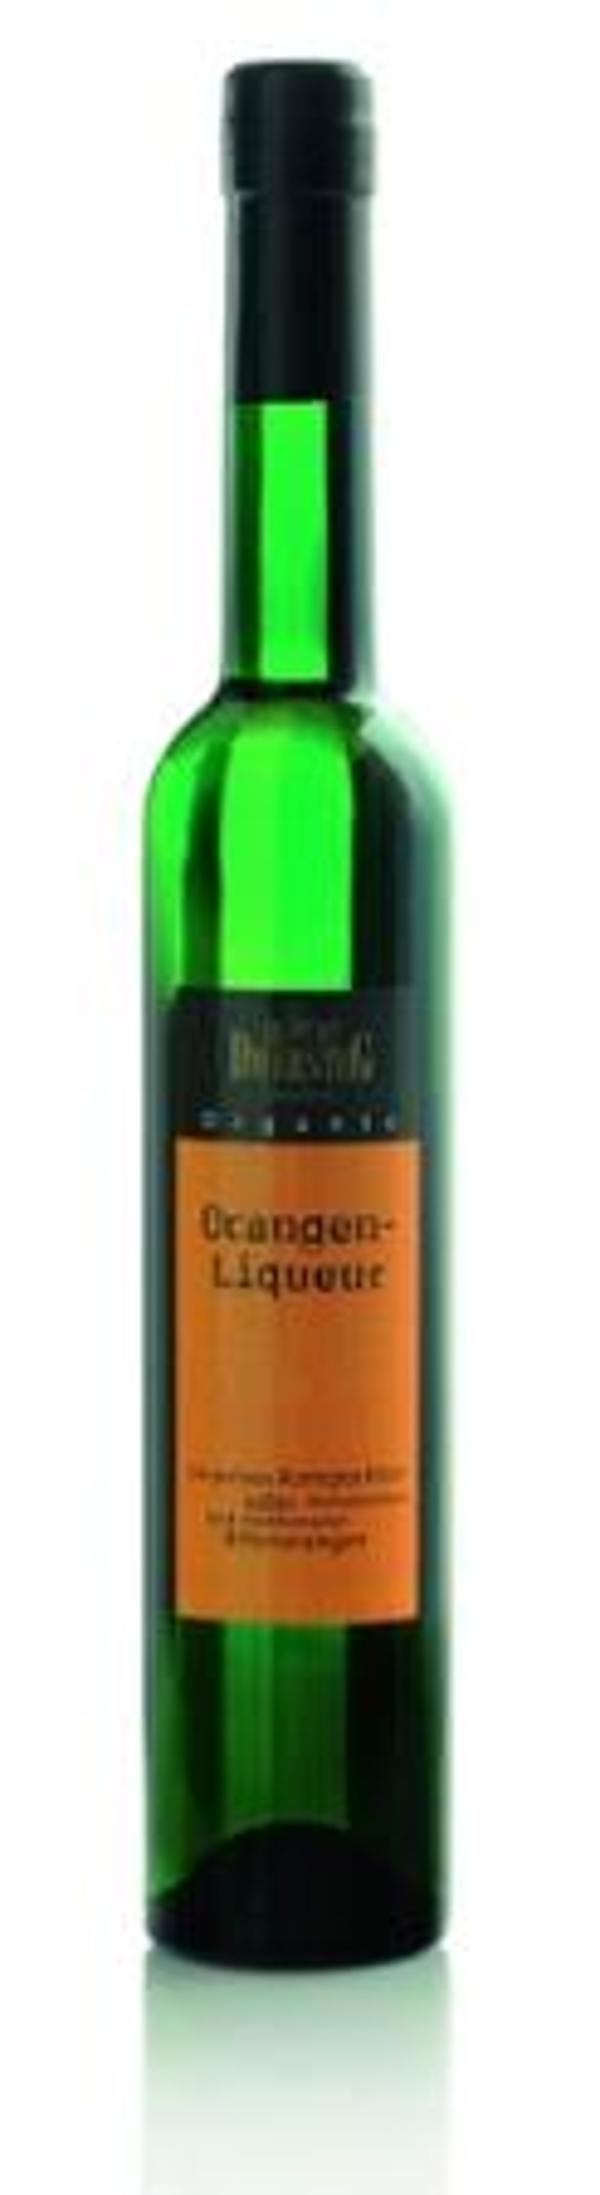 Produktfoto zu Orangen-Liqueur 0,5l